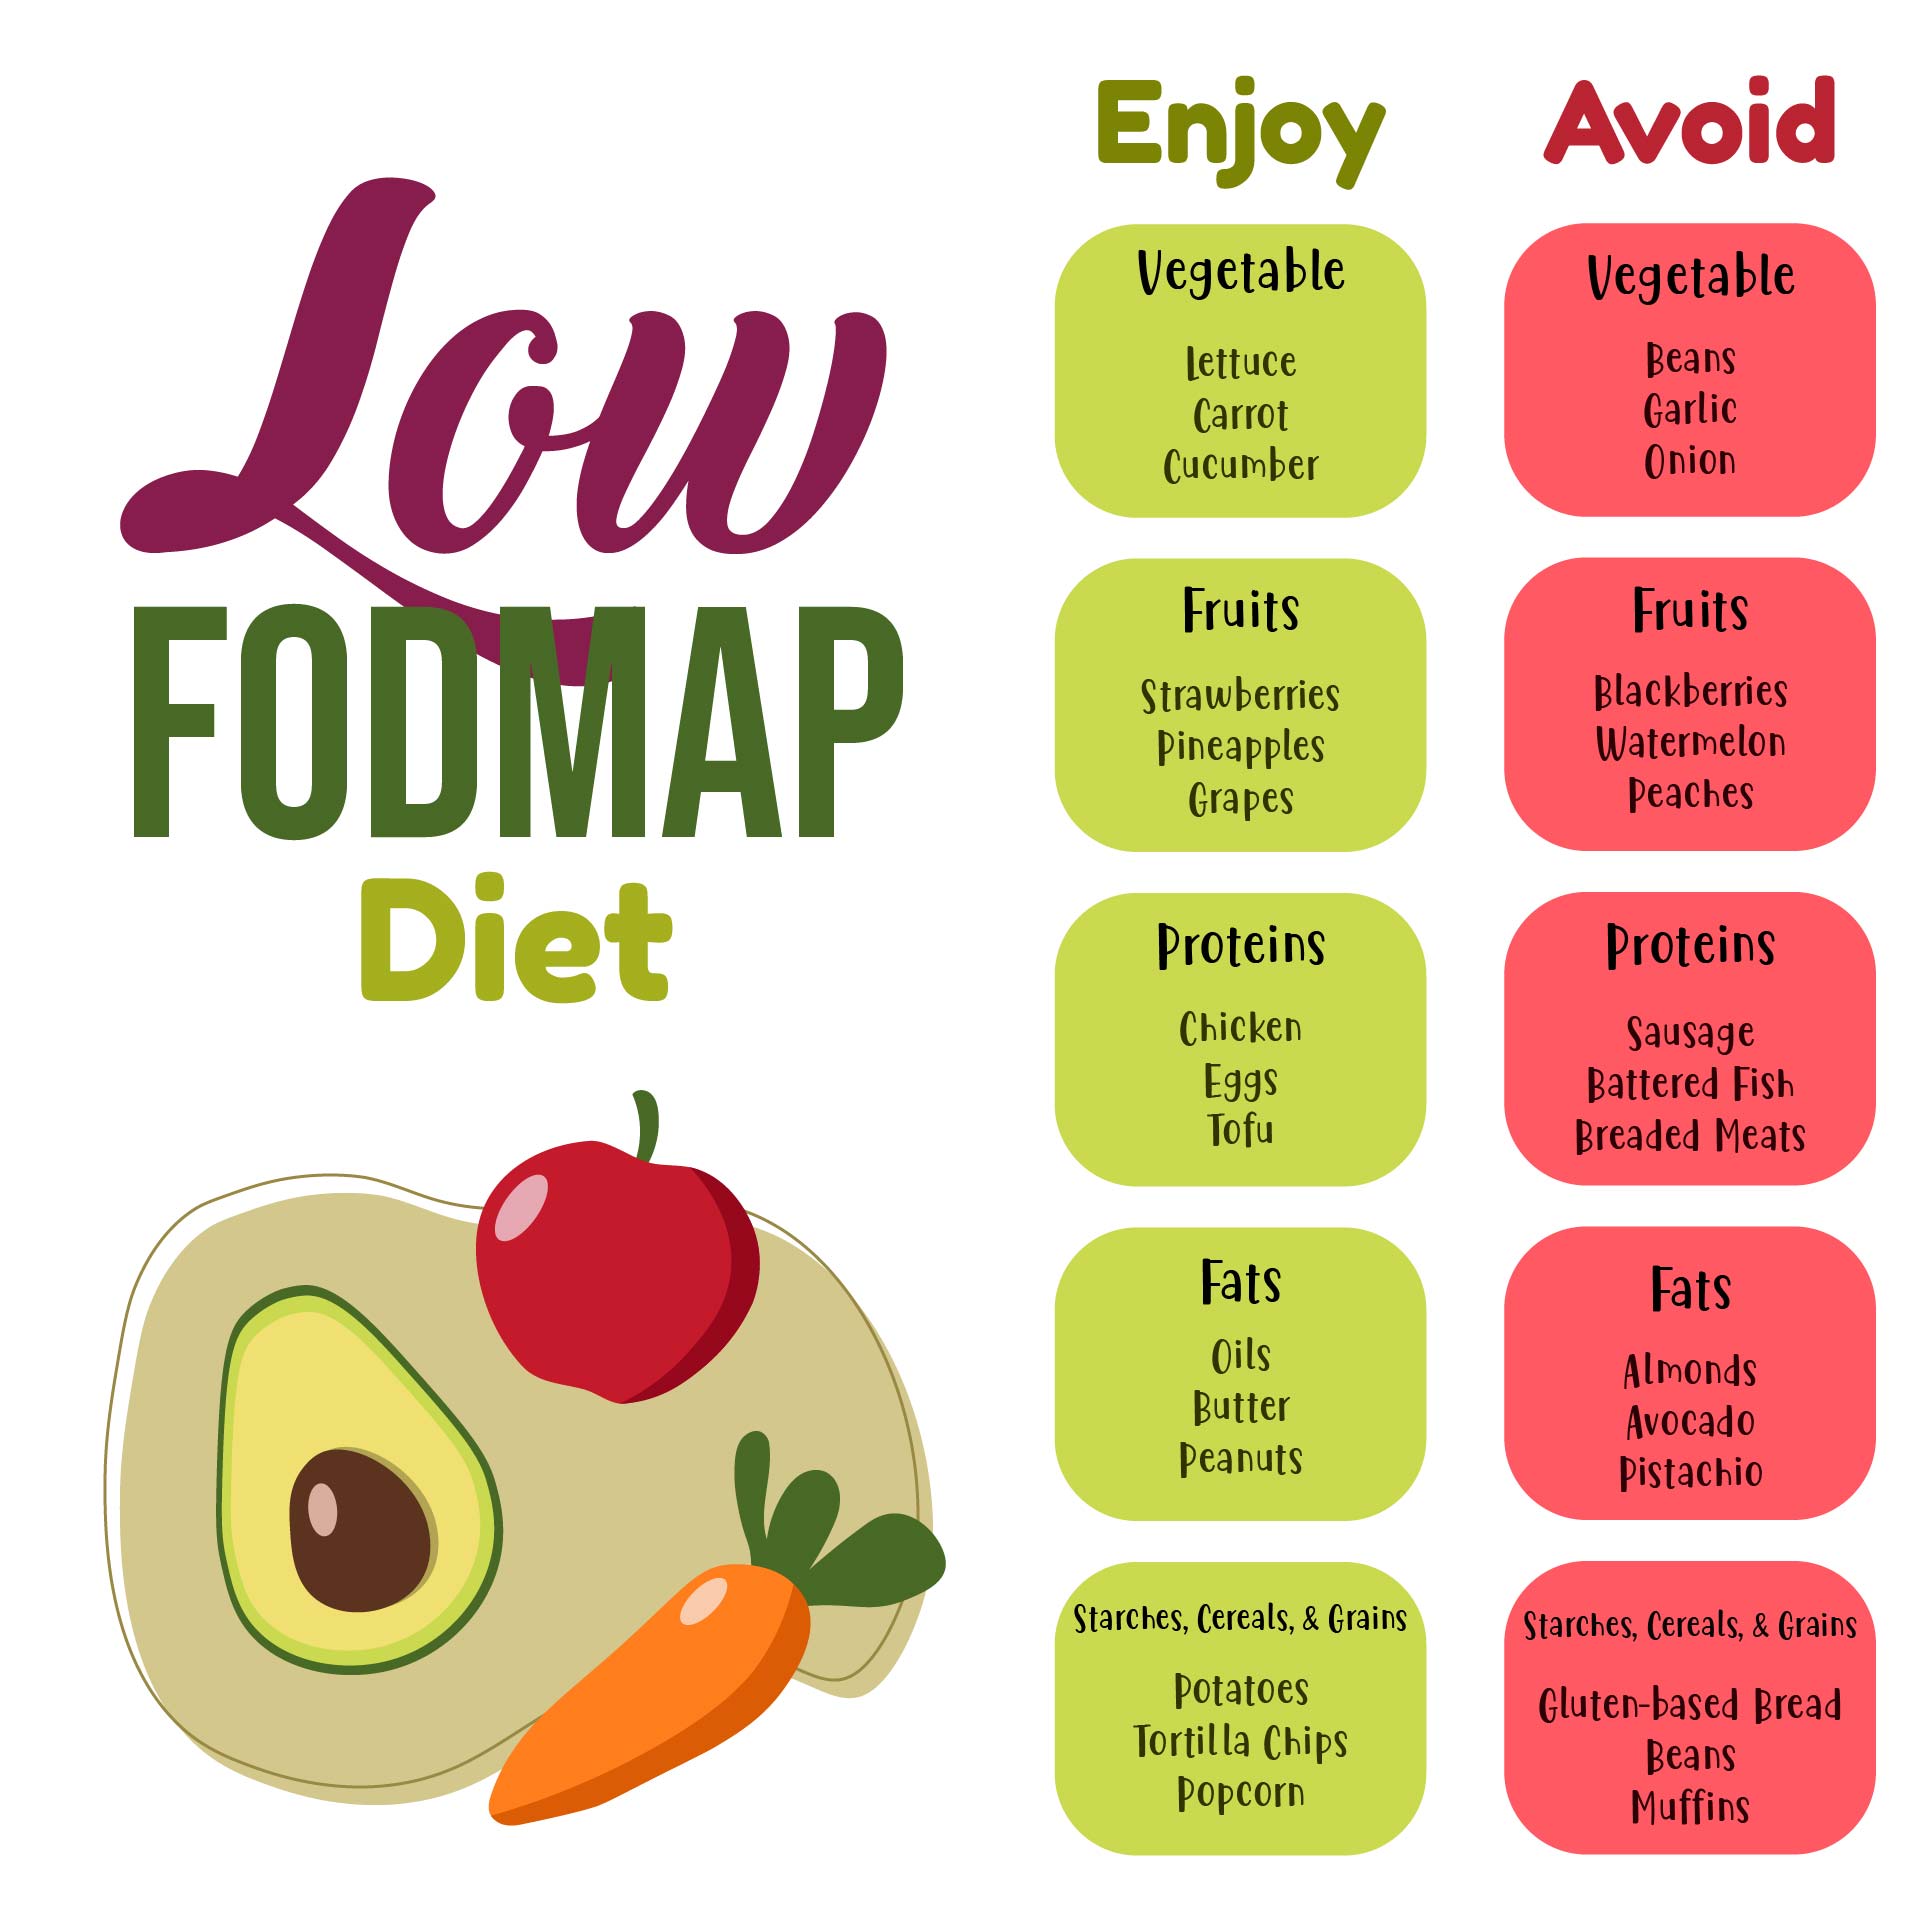 8 Best Images of FODMAP Diet Printable Out - Dr. Oz High FODMAP Food ...